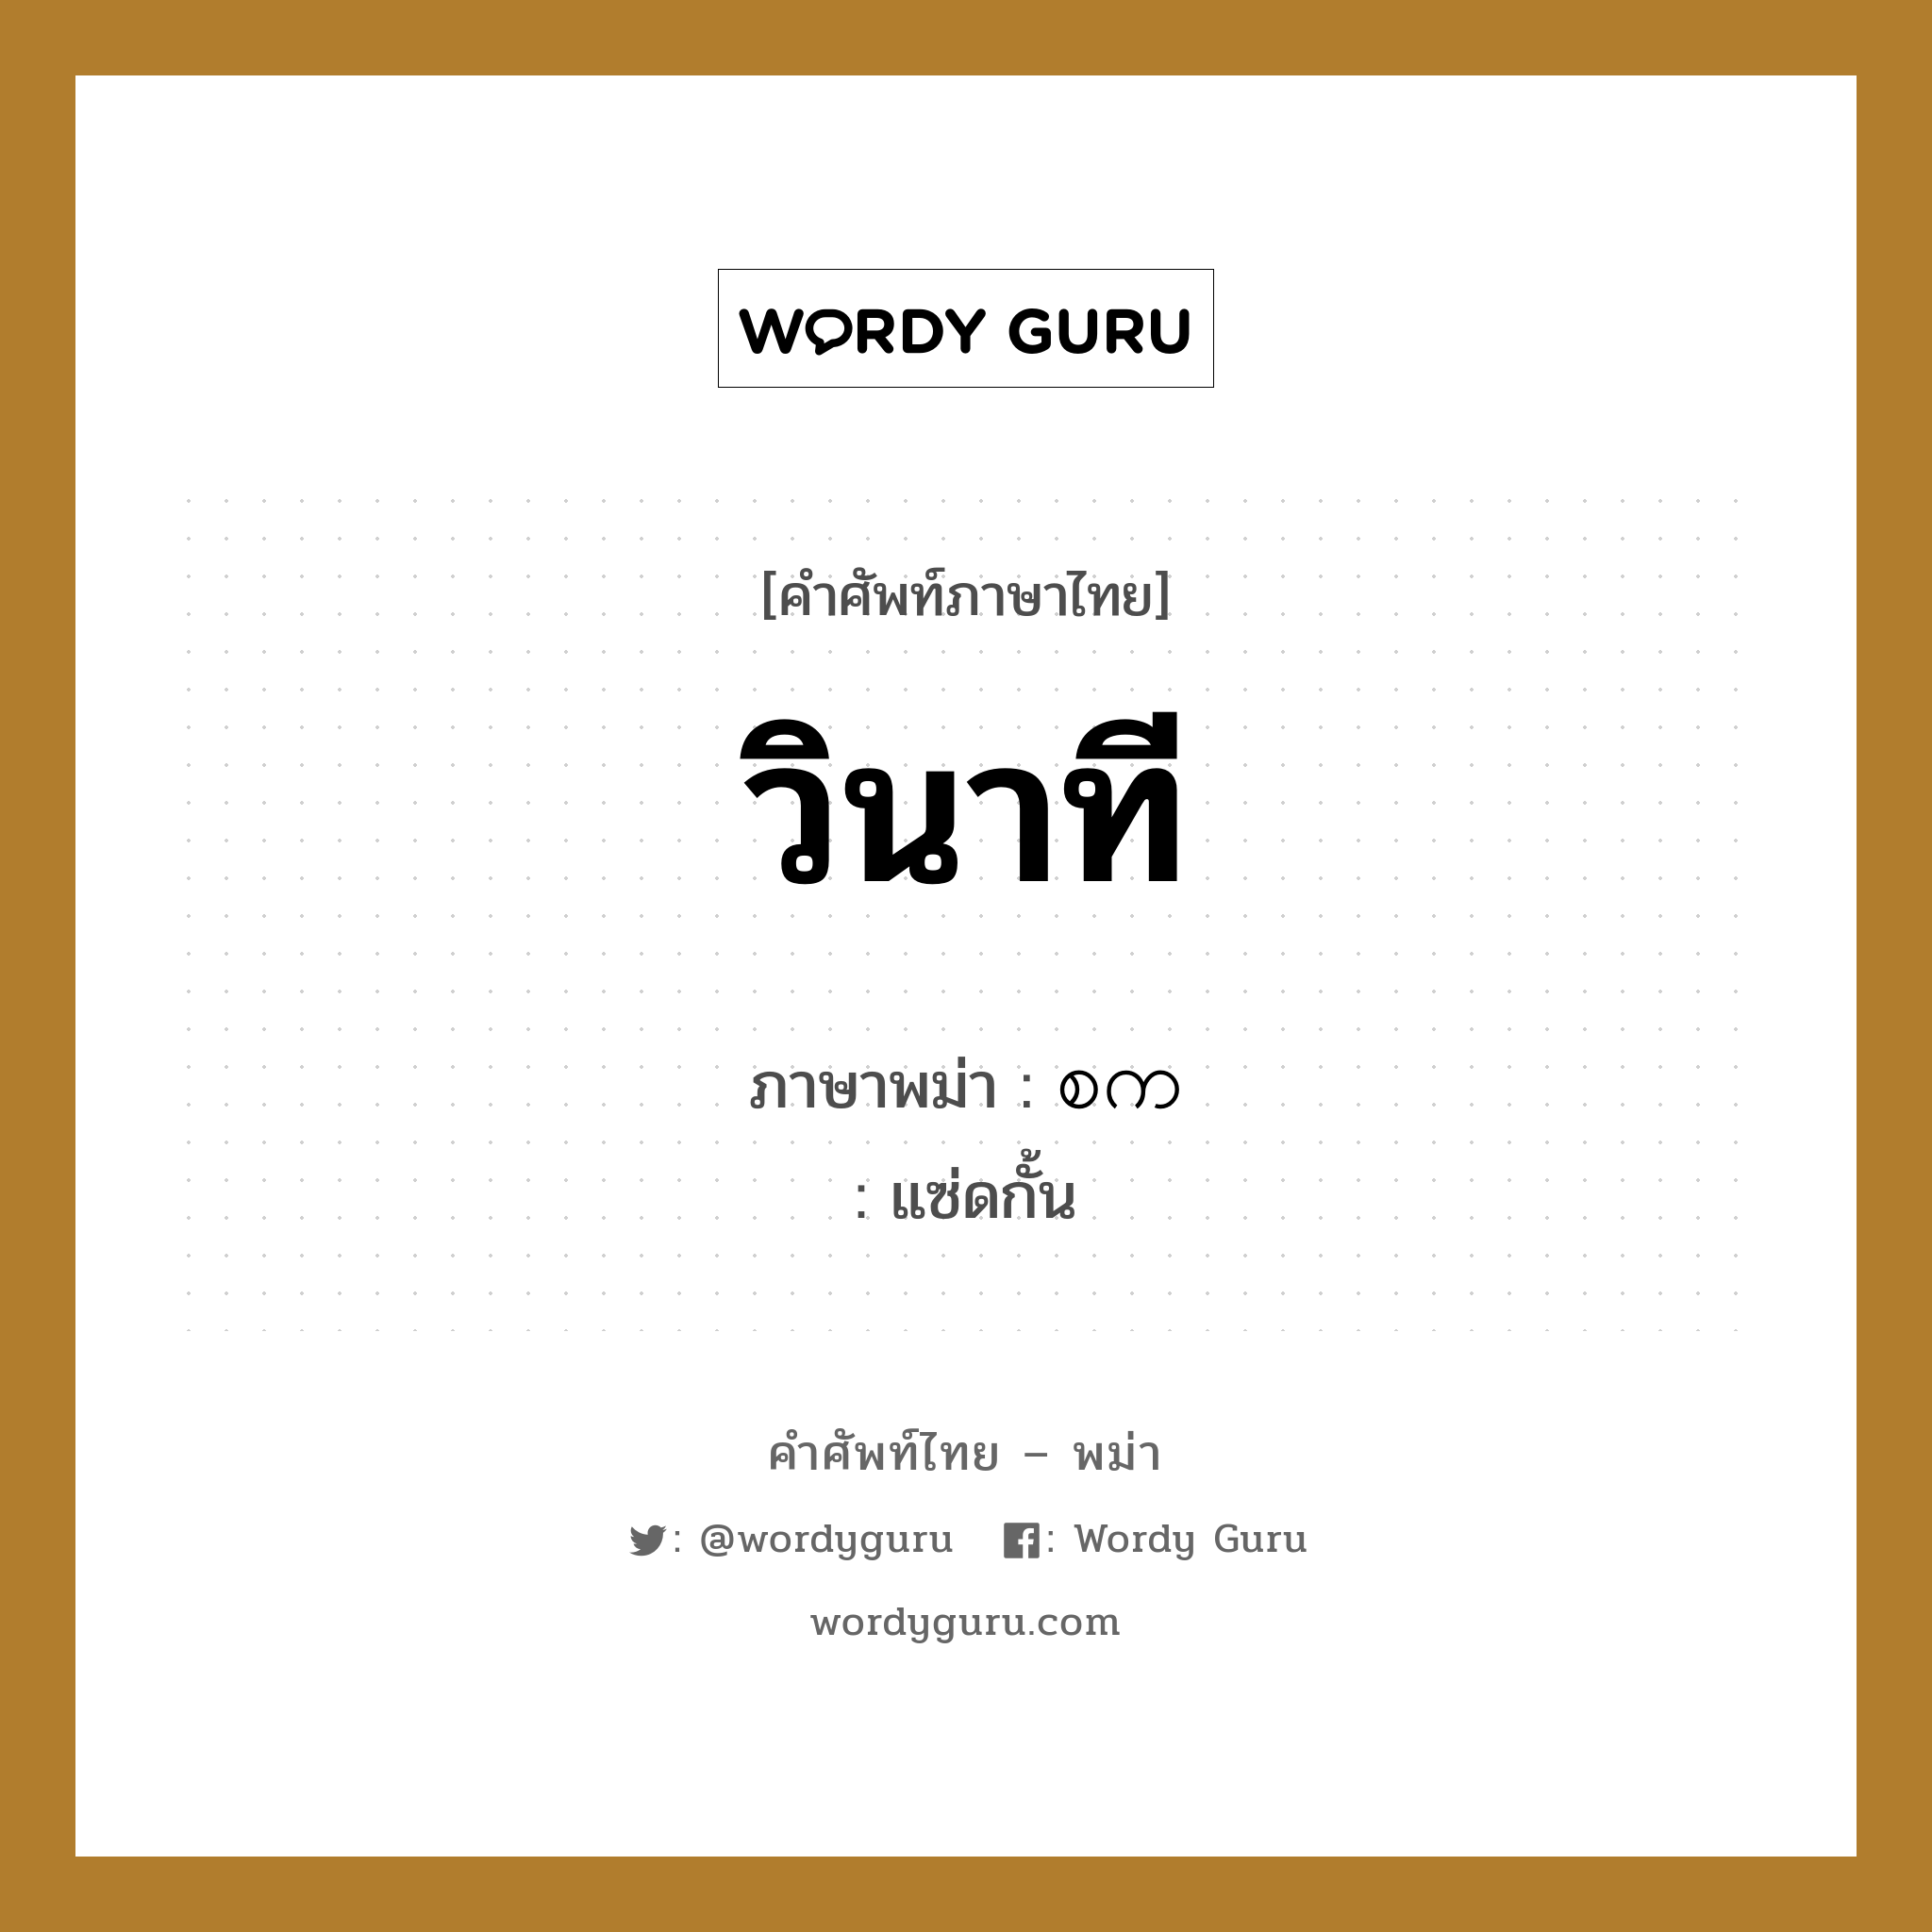 วินาที ภาษาพม่าคืออะไร, คำศัพท์ภาษาไทย - พม่า วินาที ภาษาพม่า စက หมวด หมวดวัน เวลา แซ่ดกั้น หมวด หมวดวัน เวลา